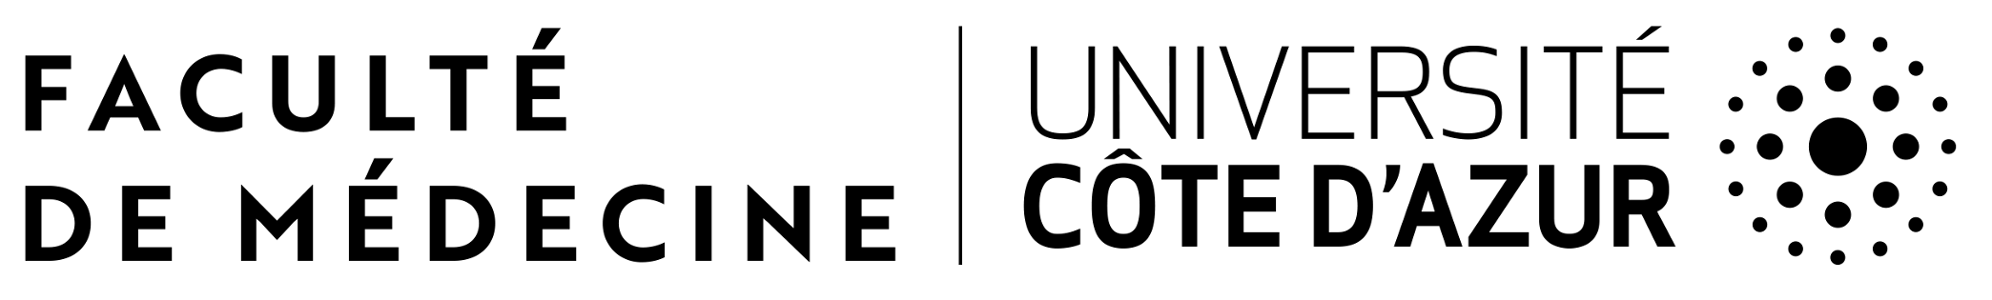 Medecine logo noir